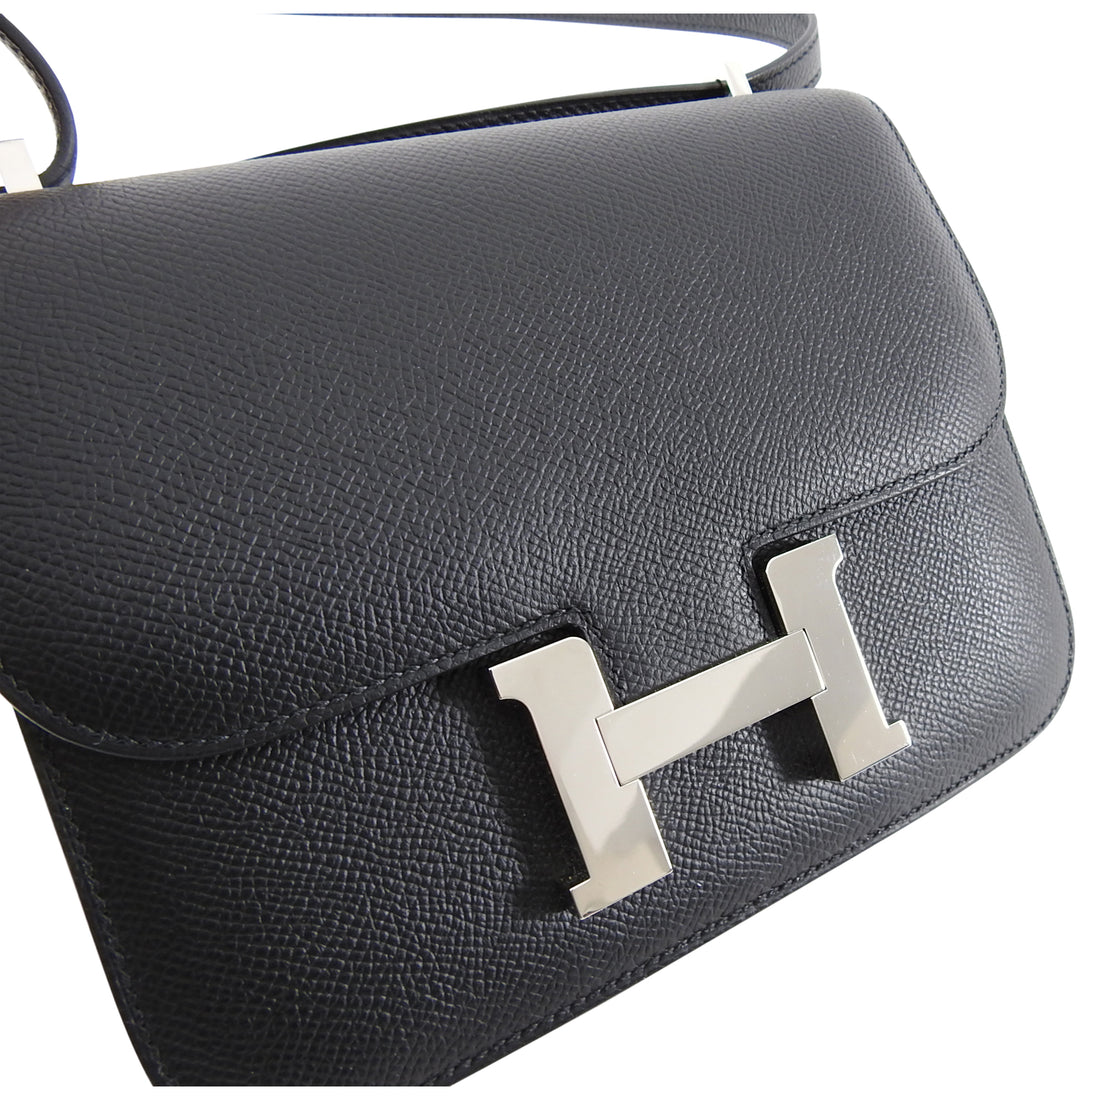 Hermes Constance Mini 18 Noir Black Epsom Handbag – MAISON de LUXE